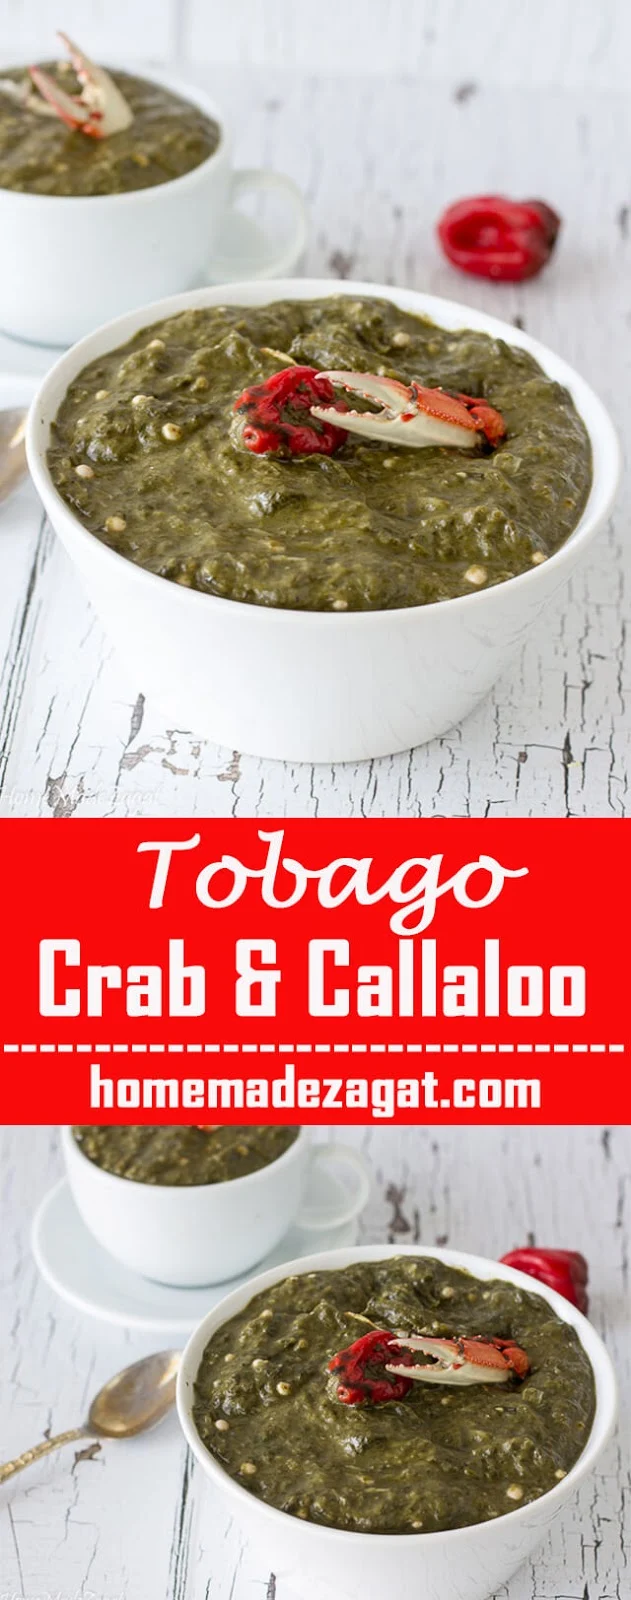 Delicious callaloo recipe with crab